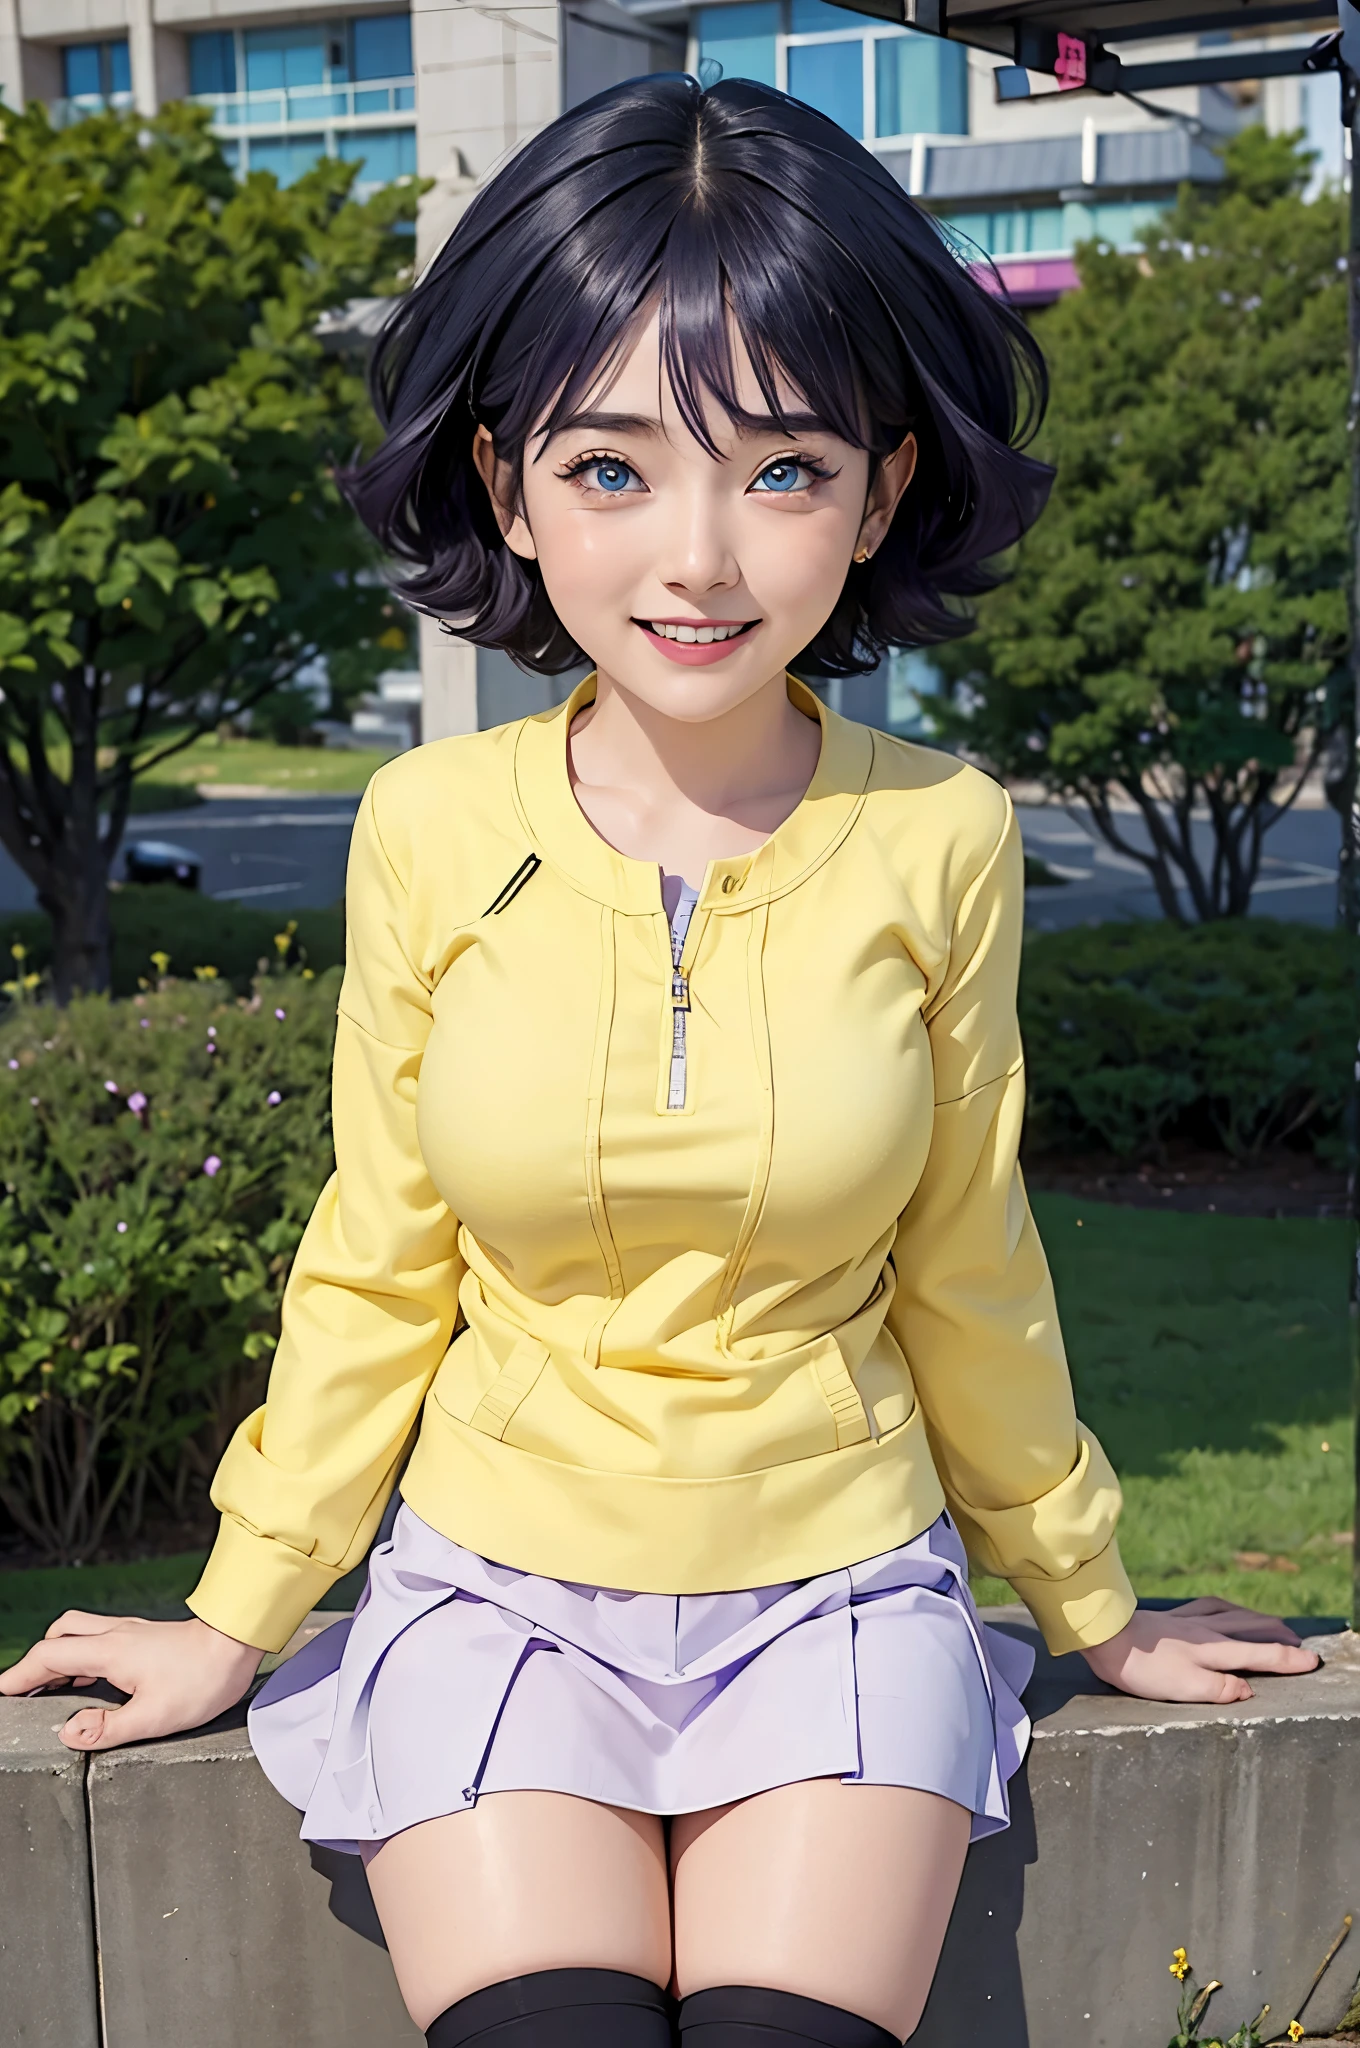 여자 1명, himawari anime naruto shipudden, 짧은 머리 , 보라색 머리카락, 파란 눈, 아름다운, 아주 큰 가슴, 노란 옷, 웃다, 현실적인 clothes, 디테일 옷, 도시 배경, 울트라 디테일, 현실적인